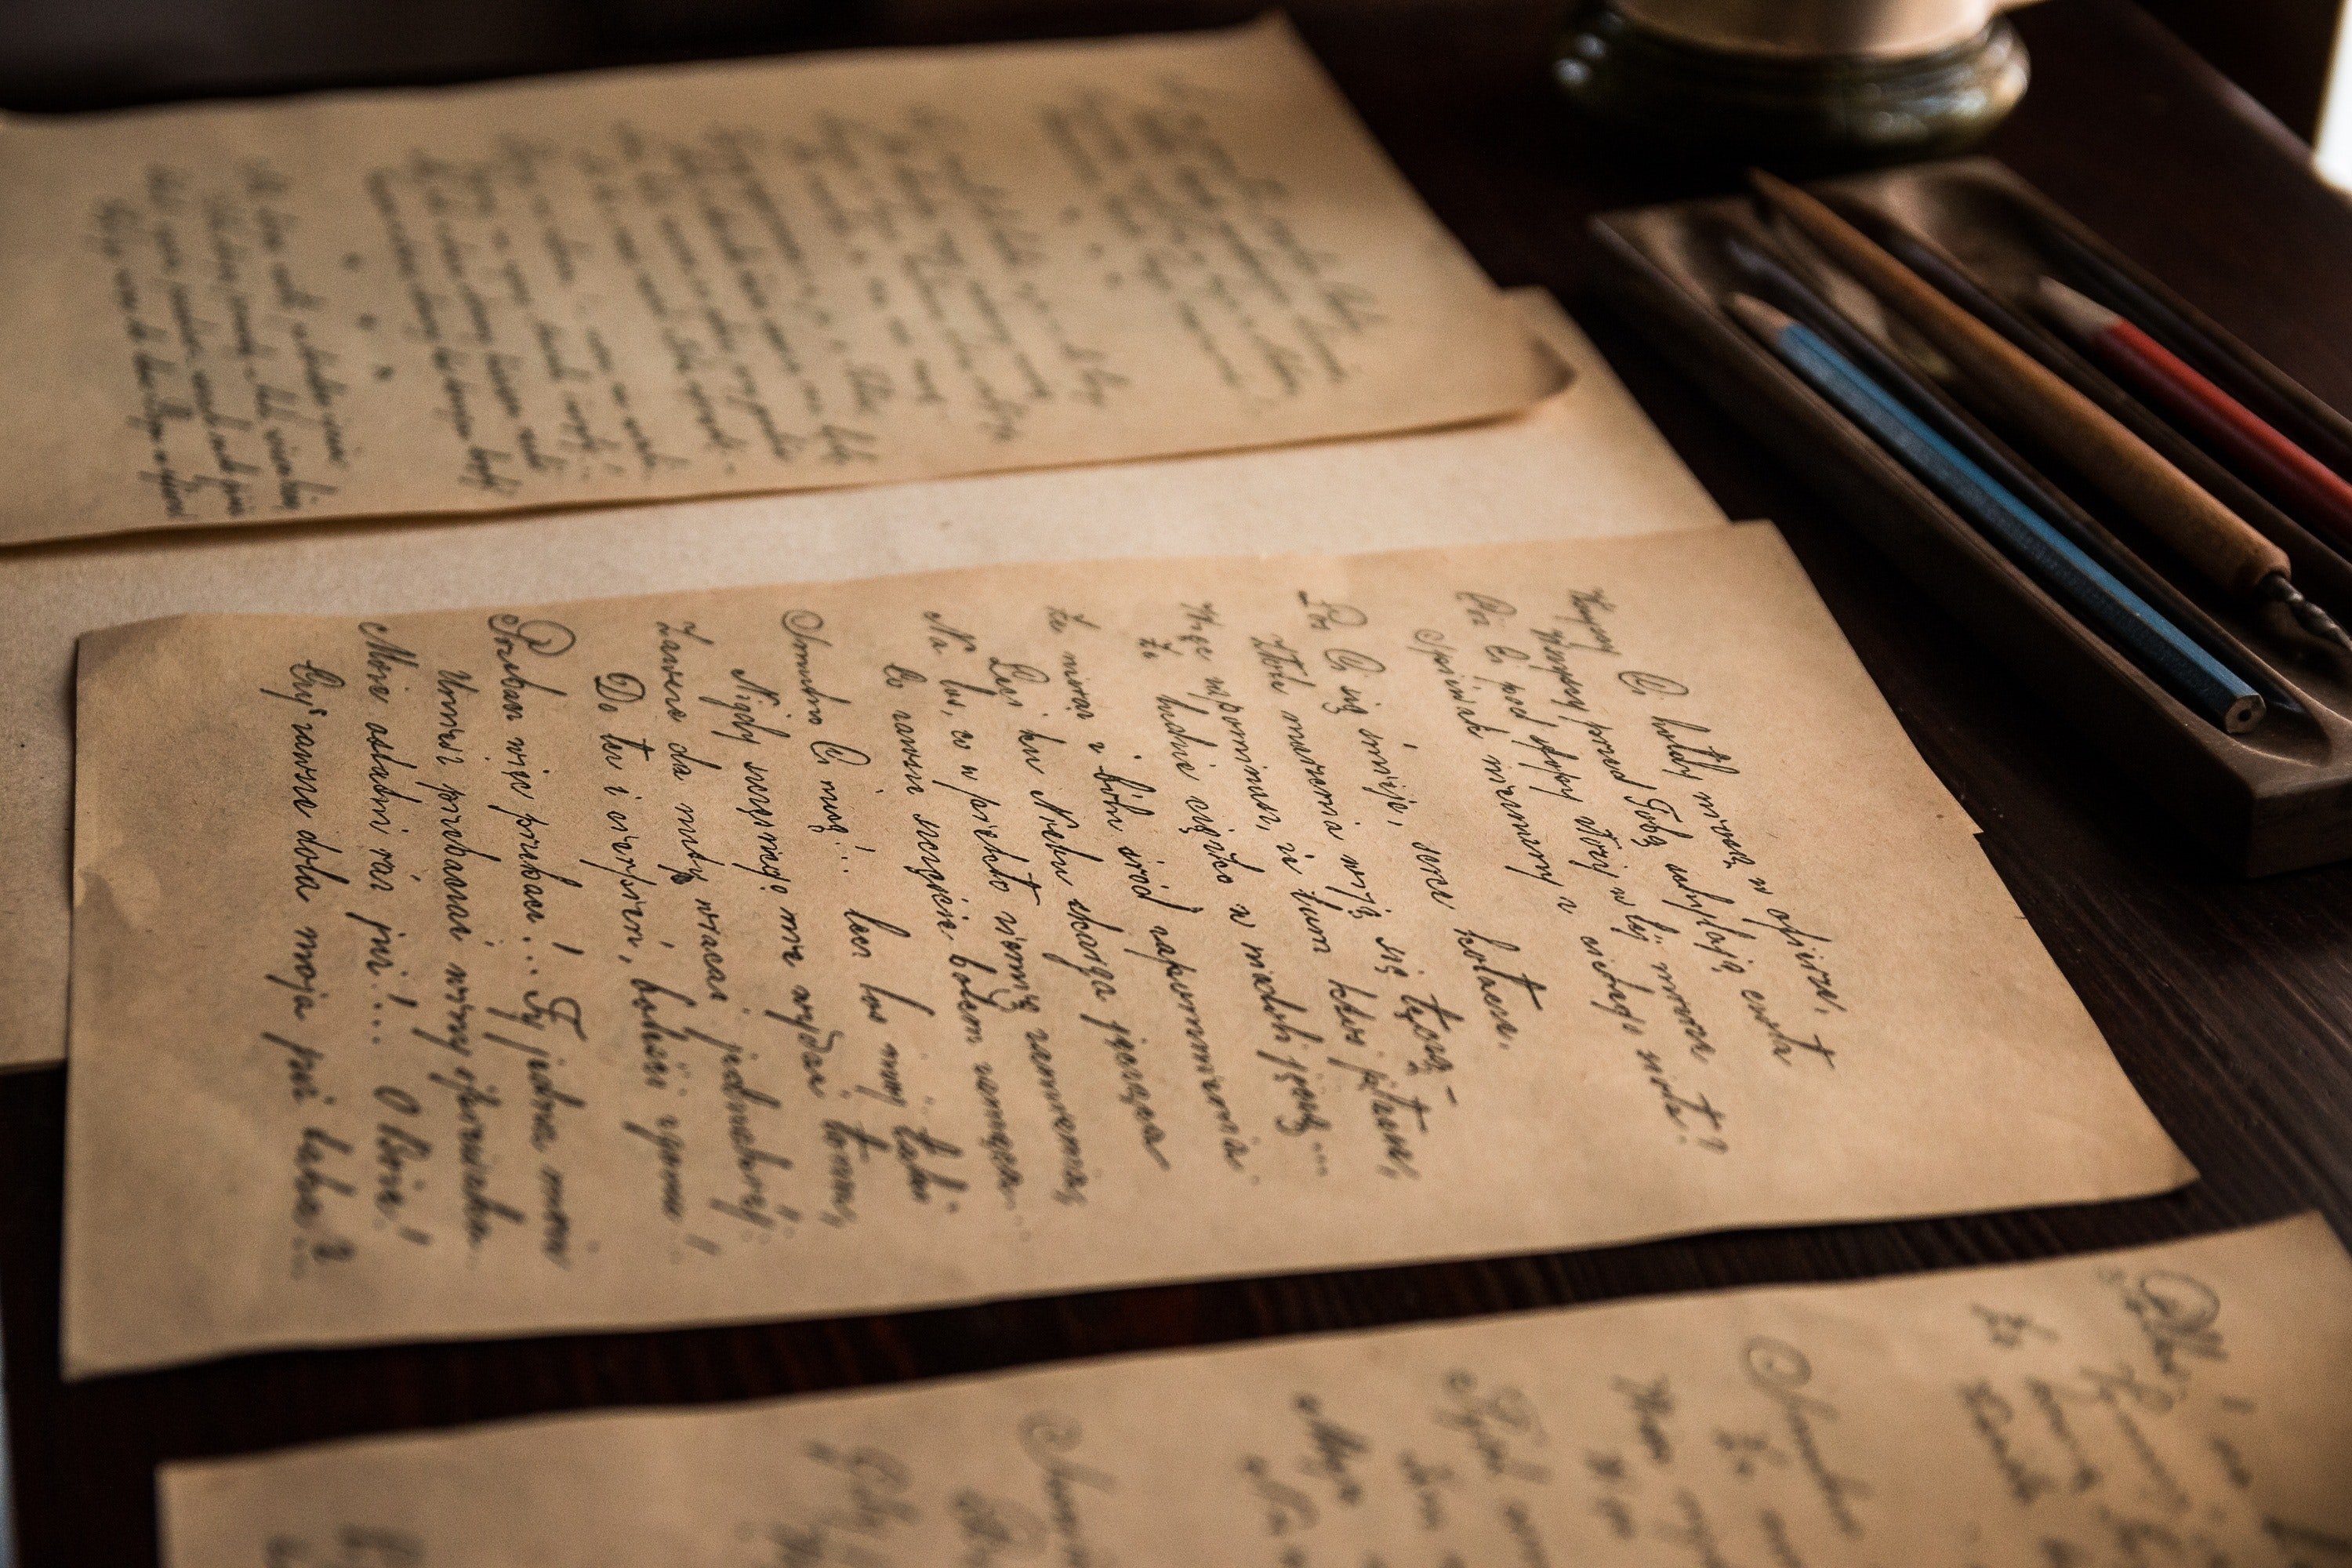 Joseph hat einen alten Brief mit der Handschrift seines Vaters gefunden. | Quelle: Pexels